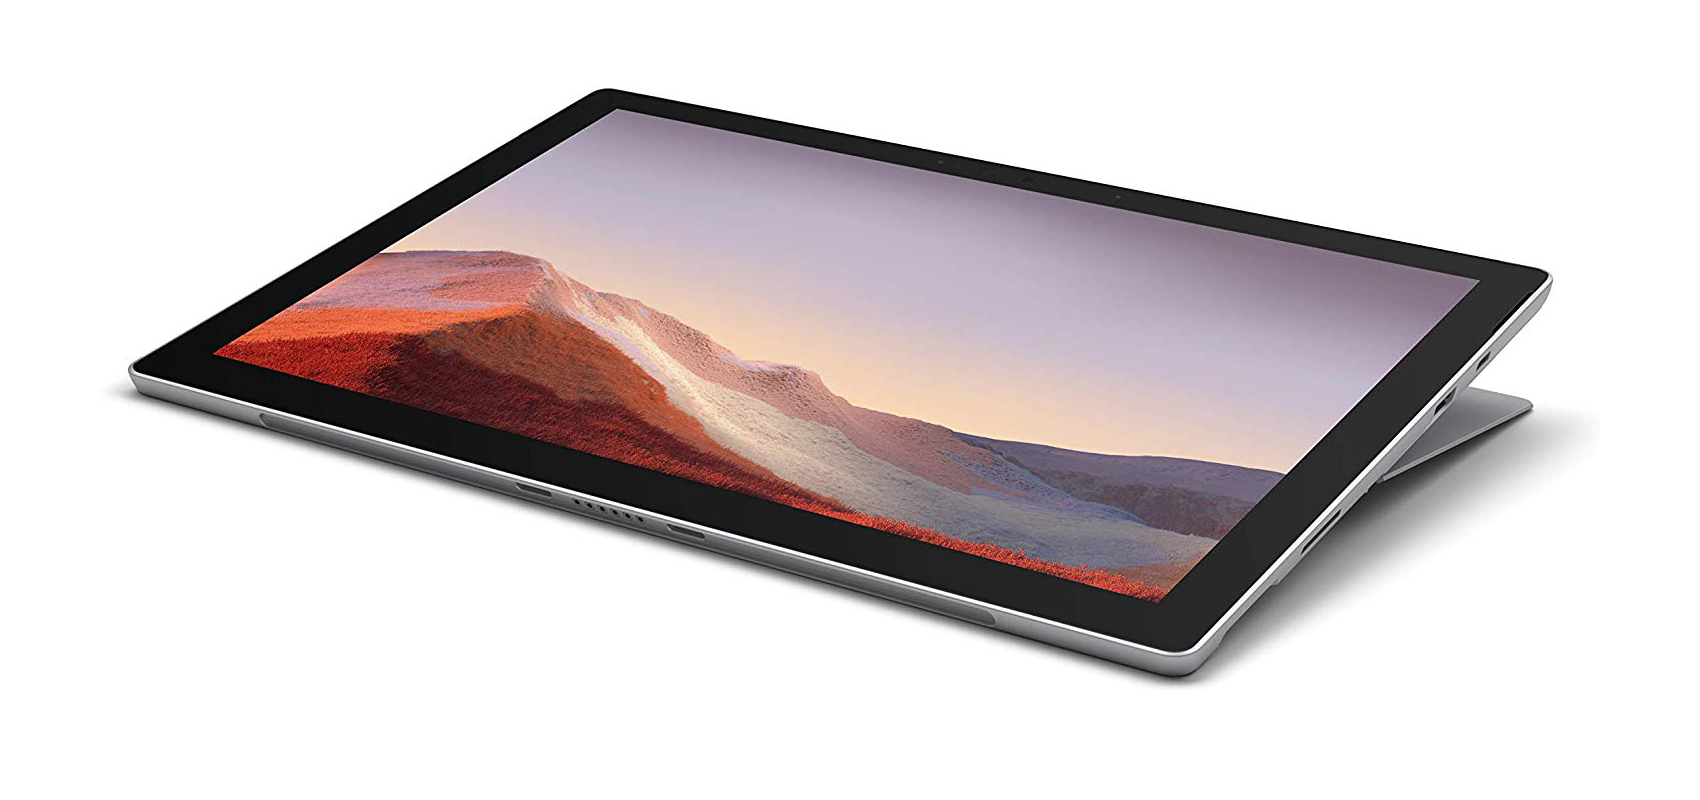 جهاز Microsoft Surface Pro 7 بالمعالج i5-1035G4/ ذاكرة الوصول العشوائي 8 جيجابايت/محرك أقراص صلبة من النوع SSD سعة 256 جيجابايت/بلاتيني + غطاء أسود